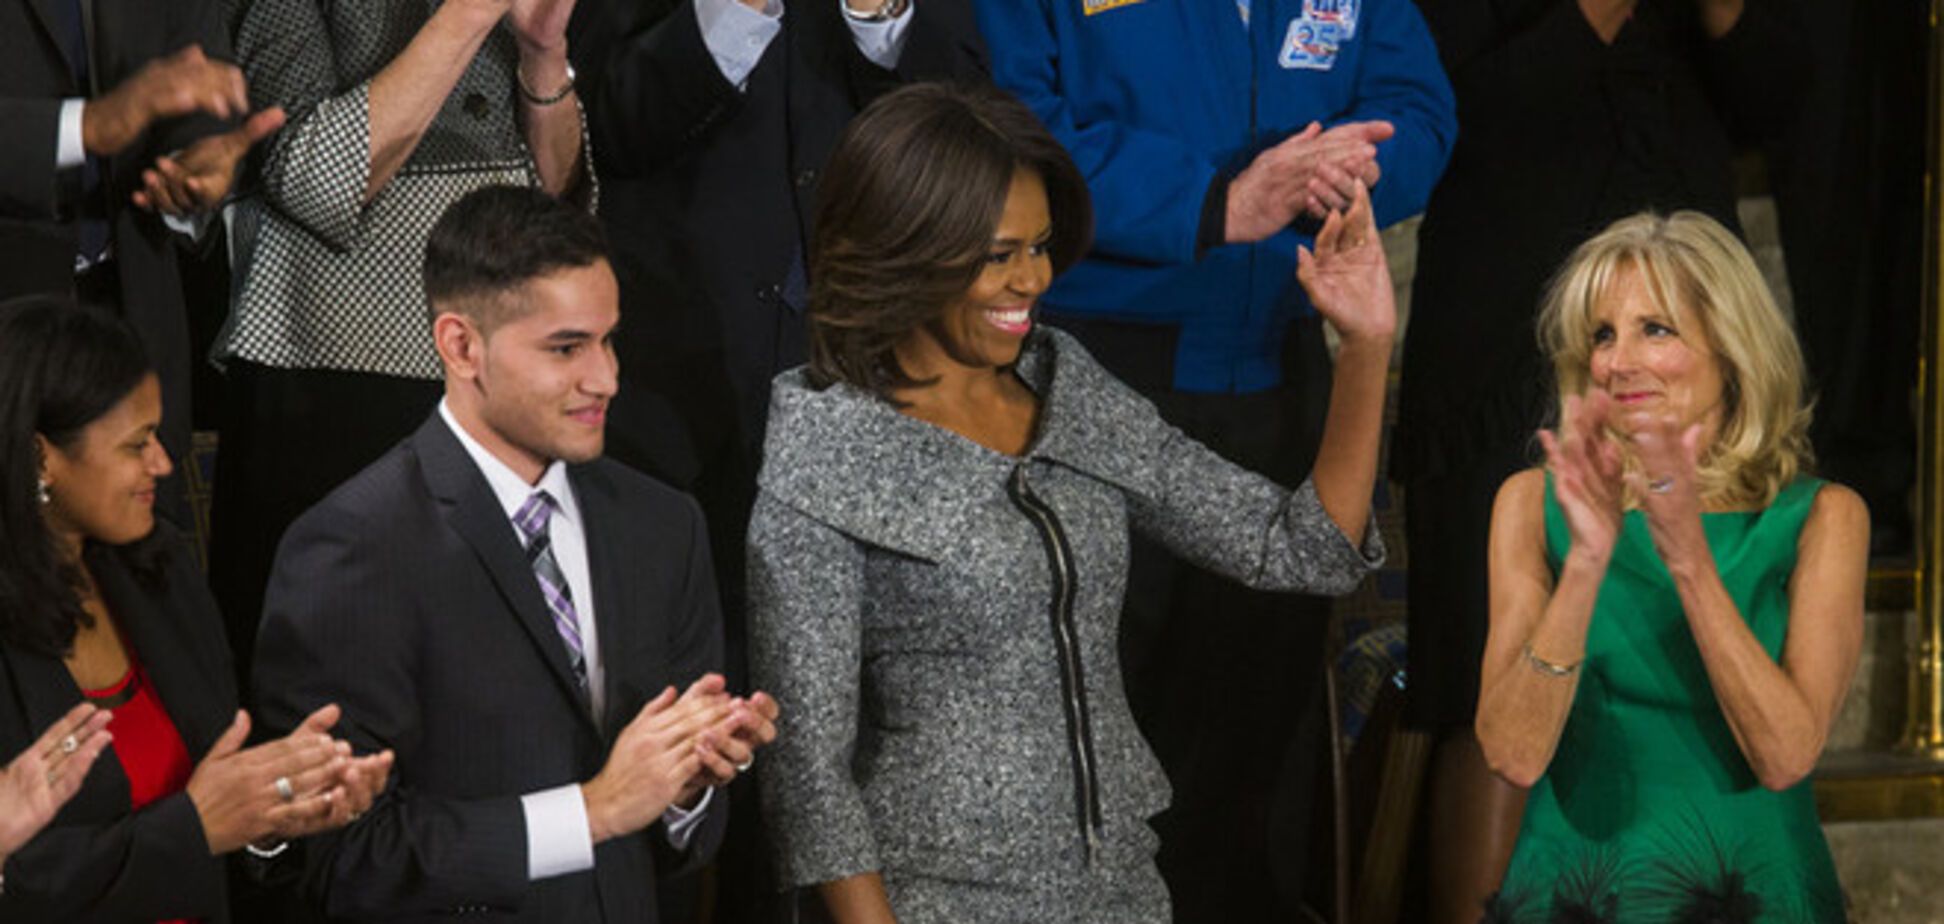 Мішель Обама слухала виступ чоловіка в Конгресі США в костюмі 'Правильної дружини'. Фотофакт